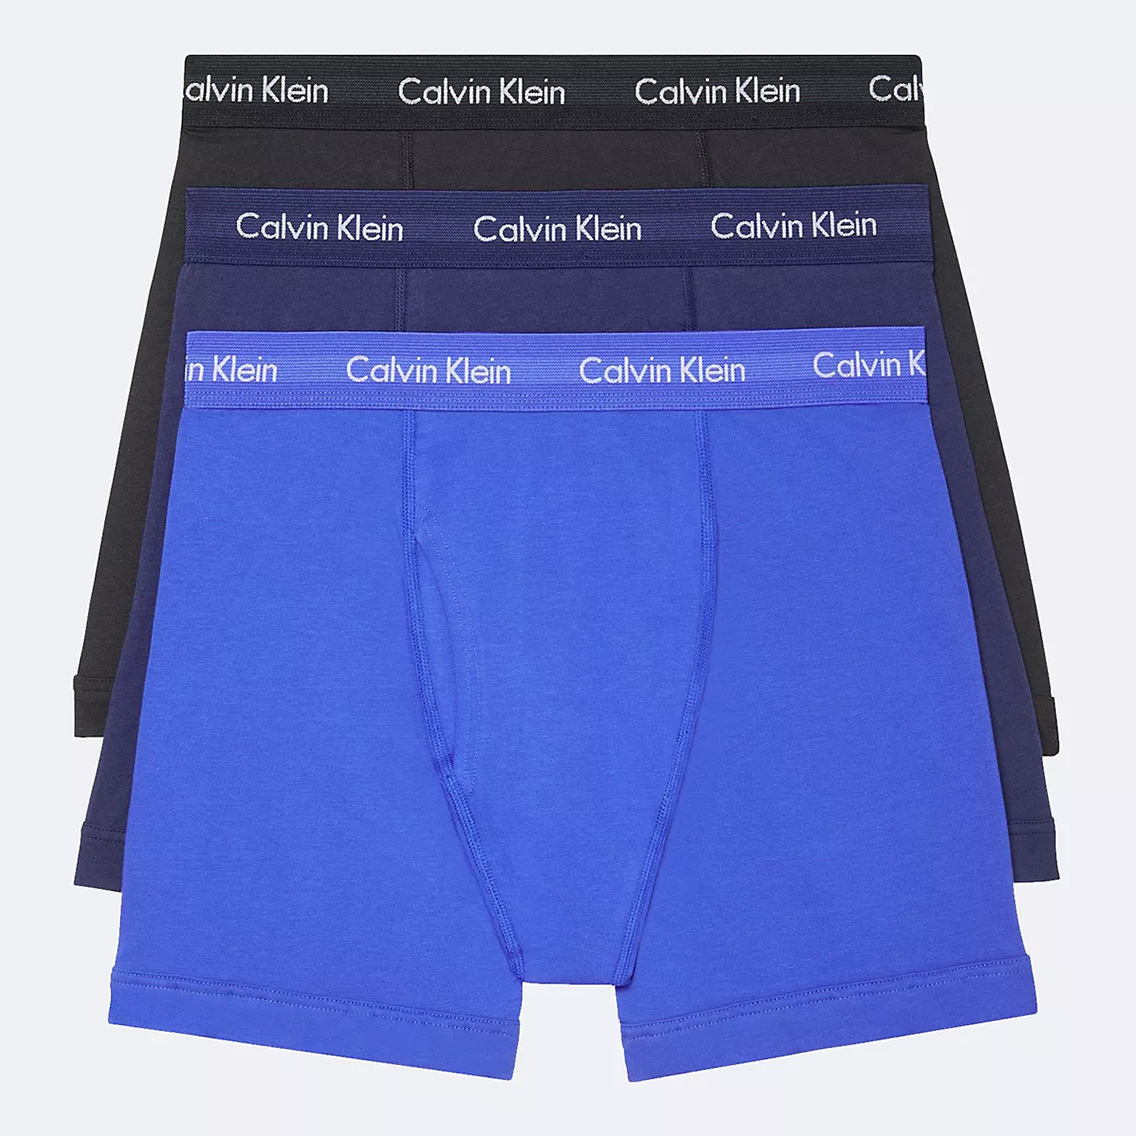 [NB2616-905] Calvin Klein カルバンクライン ボクサーパンツ メンズ アンダーウェア インナー 男性 下着 ブランド おすすめ 人気 プレゼ